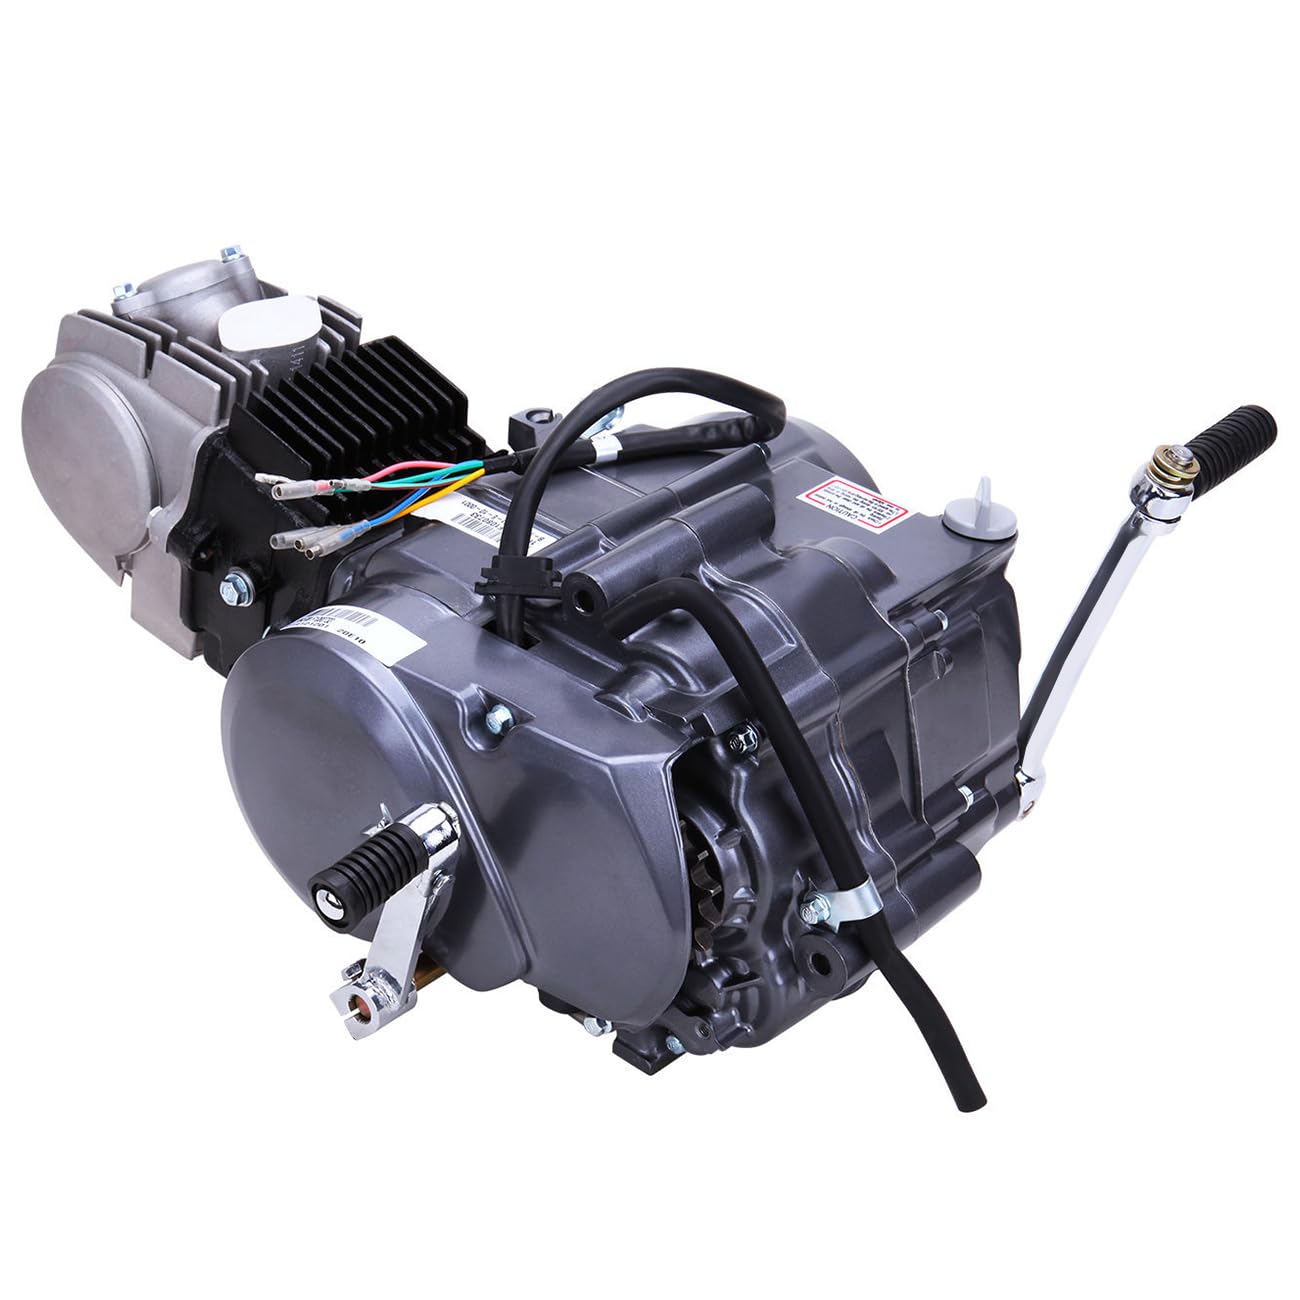 4 Takt Motor 125CC, Einzylindermotor Dirt Bike Pitbike Cross, CDI-Zündung, Luftkühlsystem, Energieeinsparung, 7500r/min, für CRF50/70 XR50 Z50 1P52FMI von soudesileim